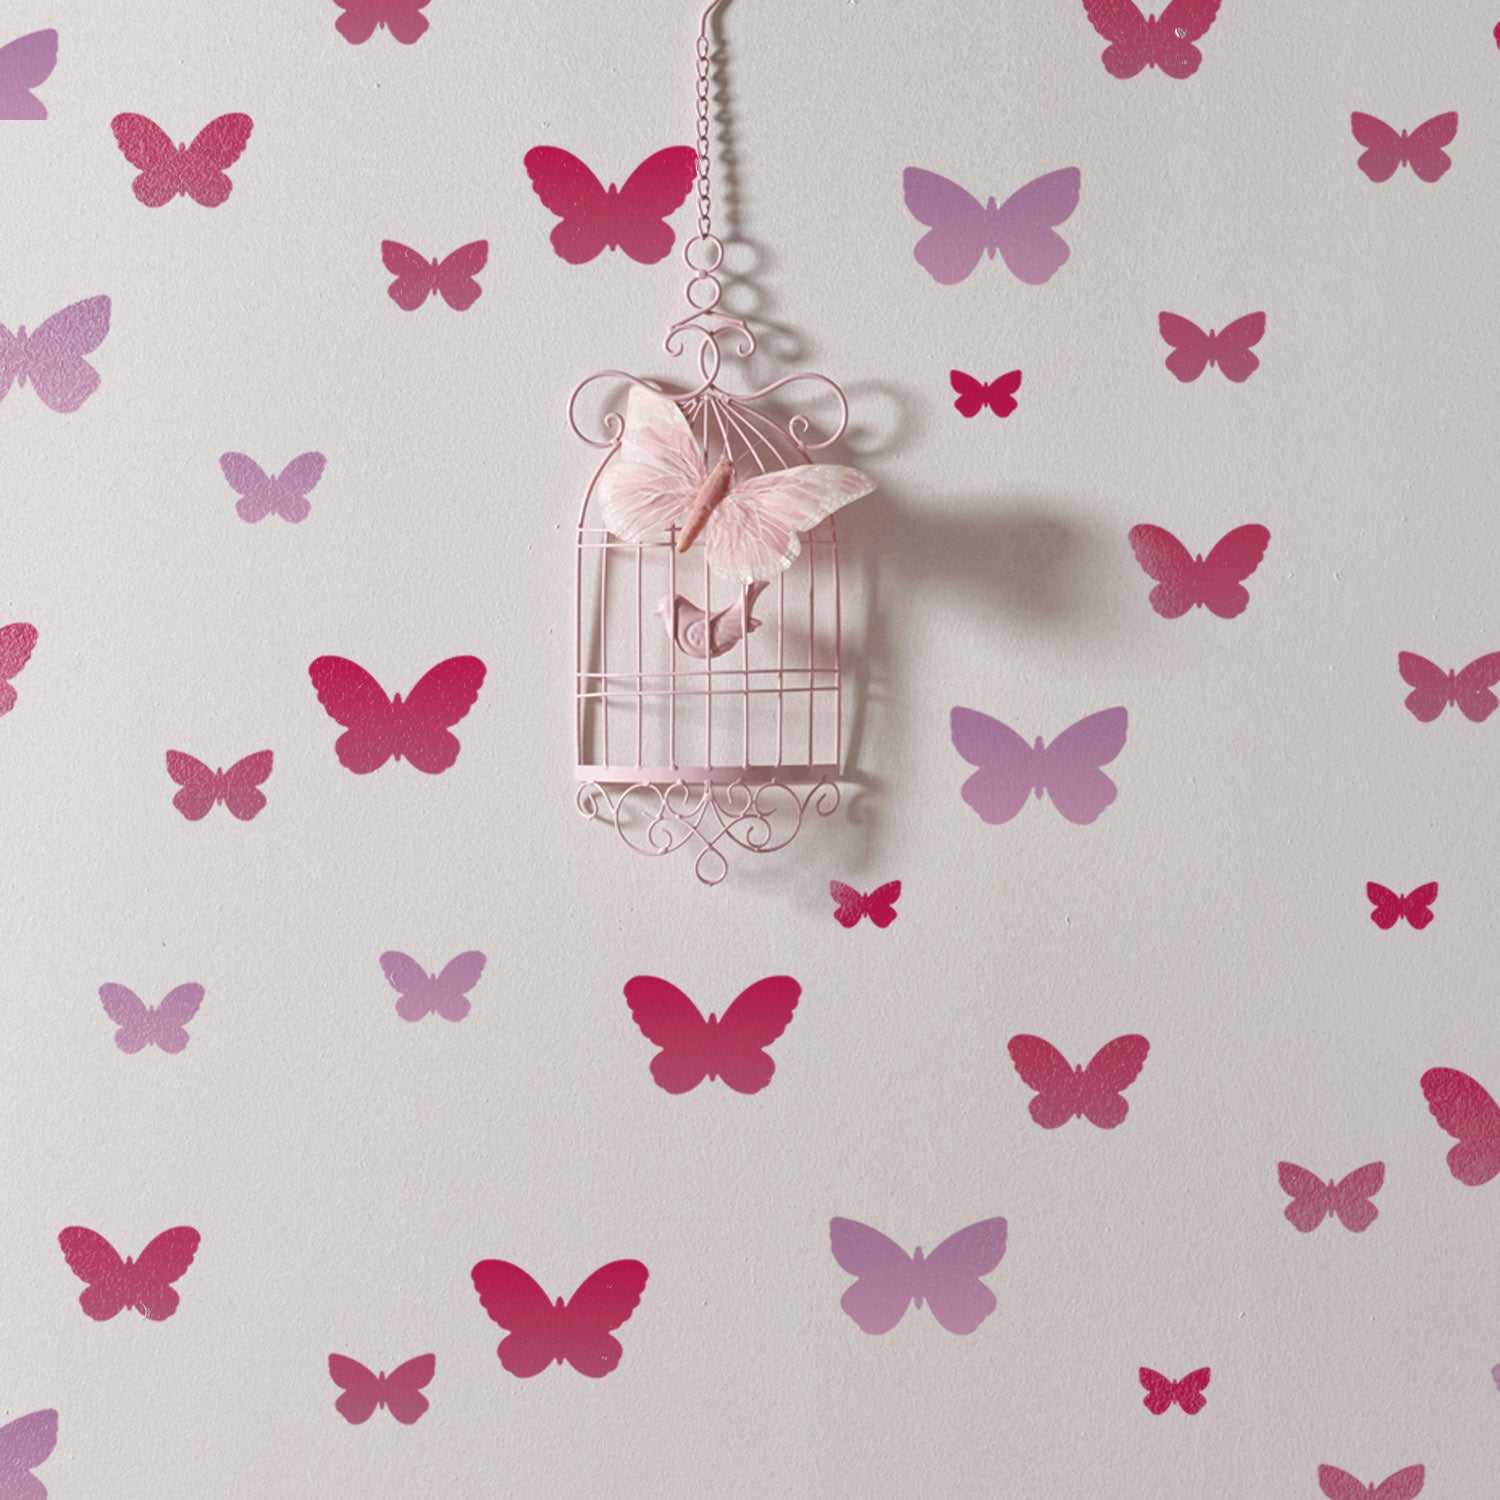 46+ Butterflies Stencil Design Pics